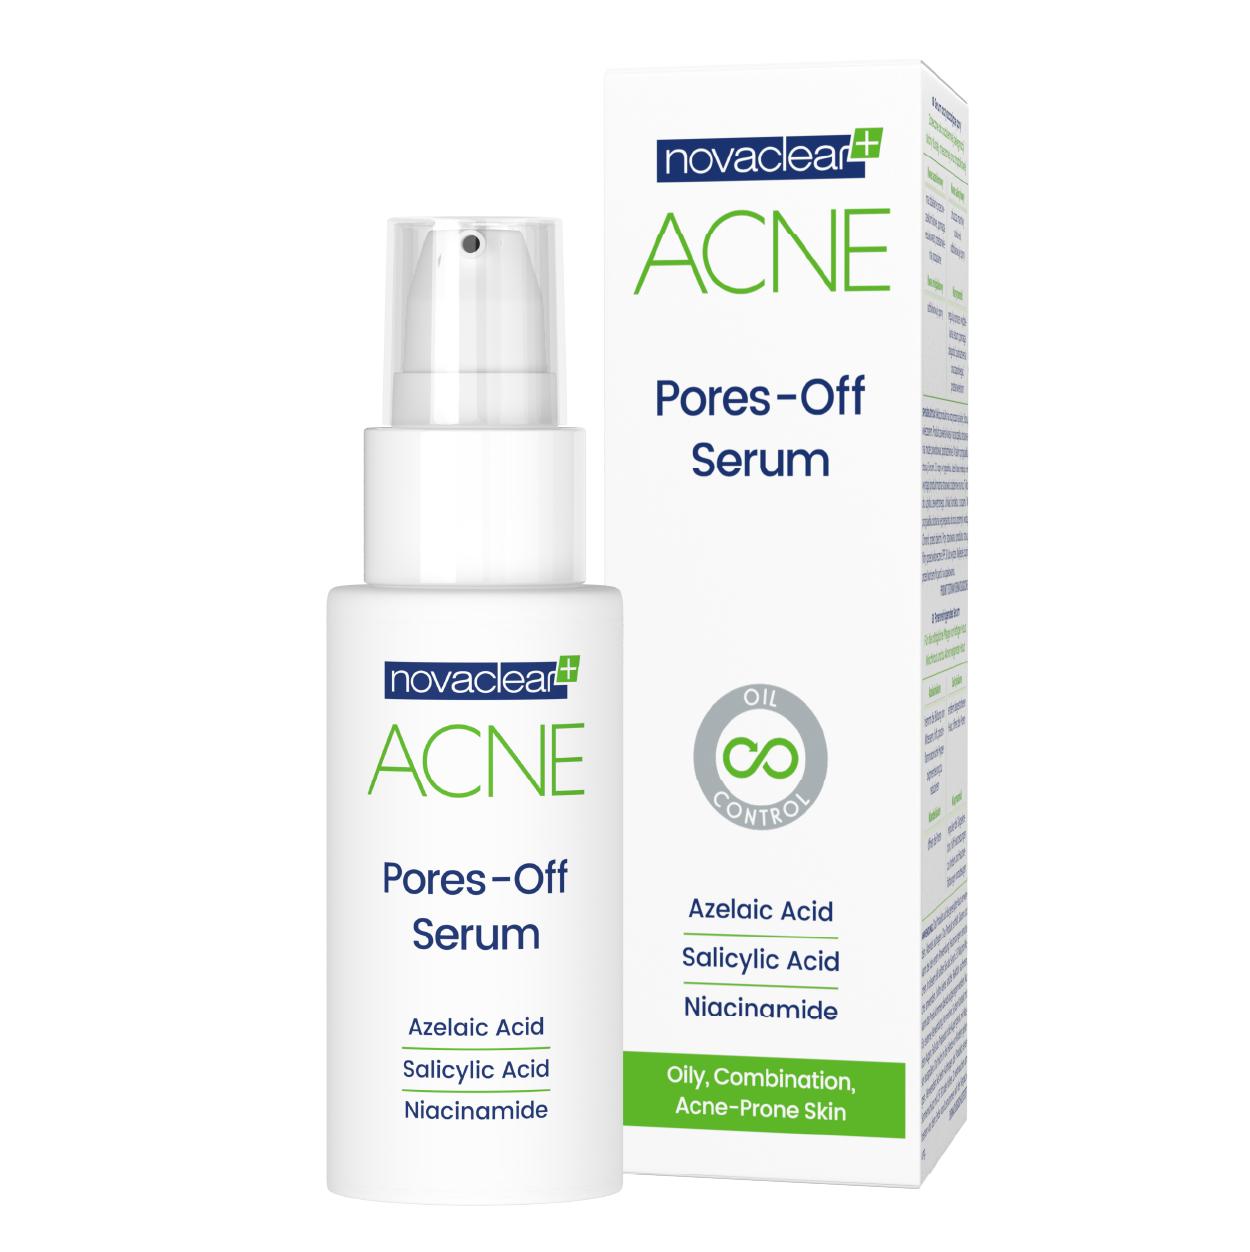 Acne Pores-Off Serum